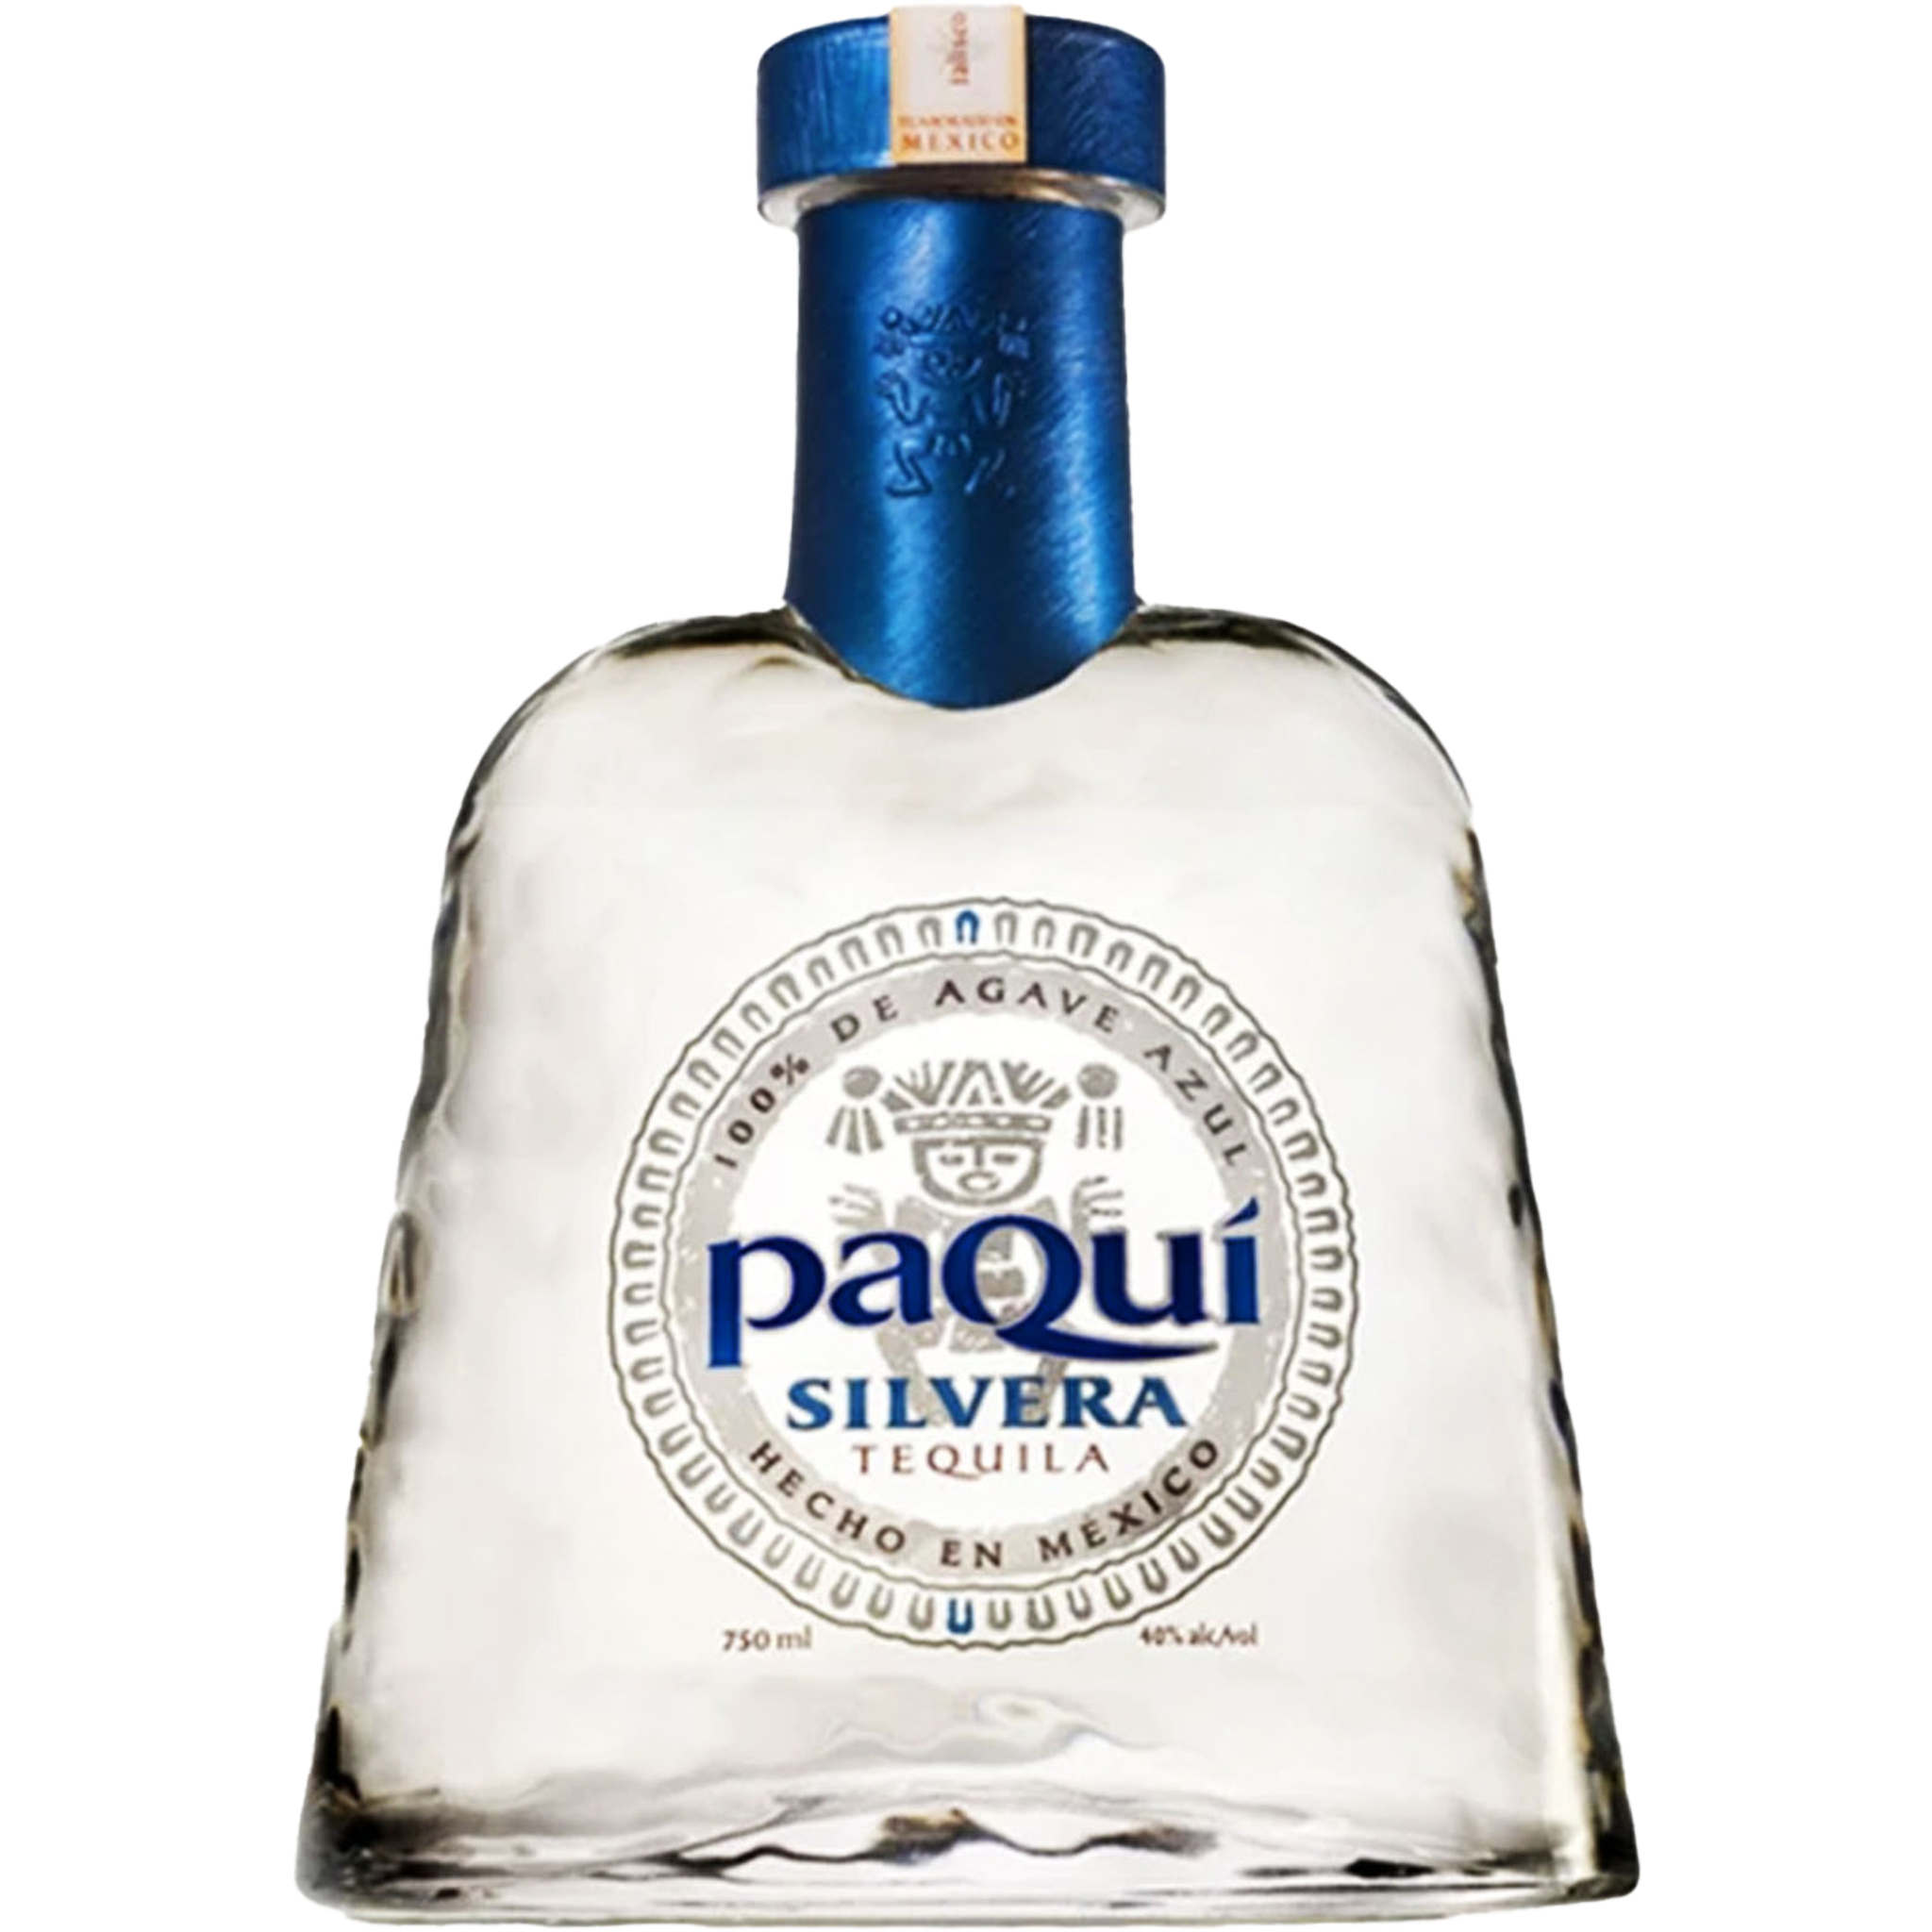 Paqui Silvera Tequila 750ml